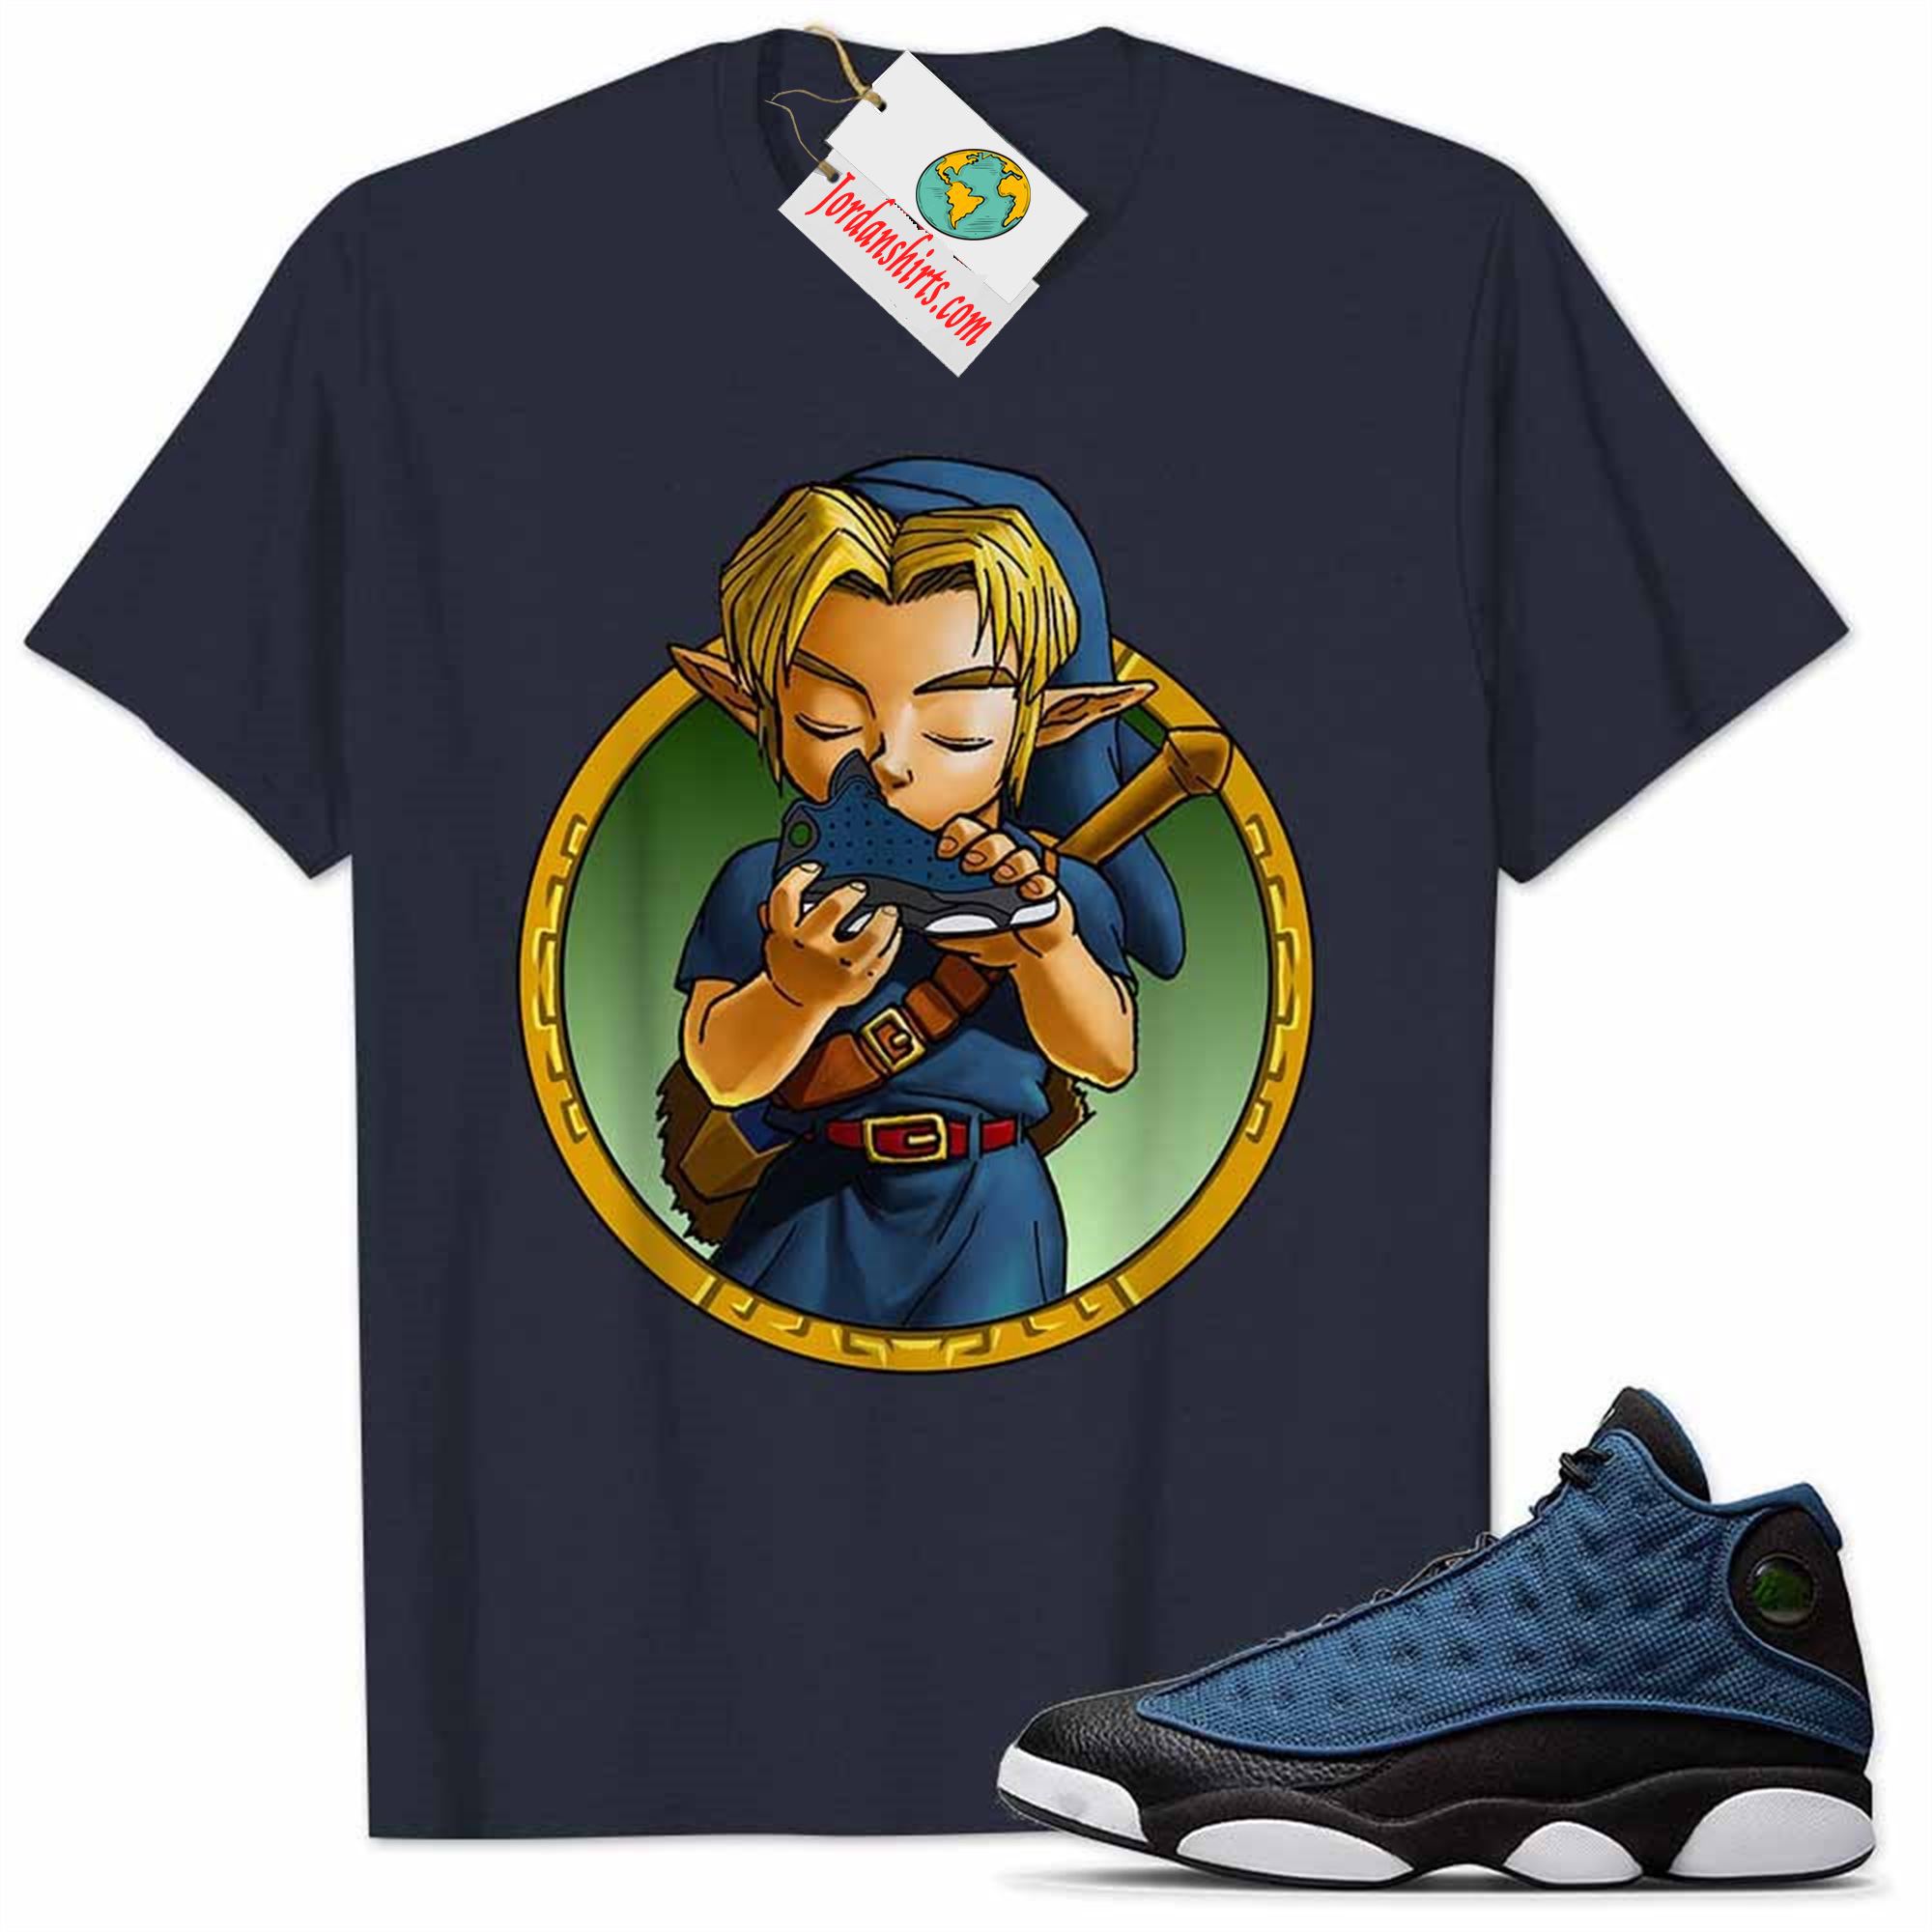 Jordan 13 Shirt, Jordan 13 Brave Blue Shirt Link Legend Of Zelda Find Treasure Navy Full Size Up To 5xl